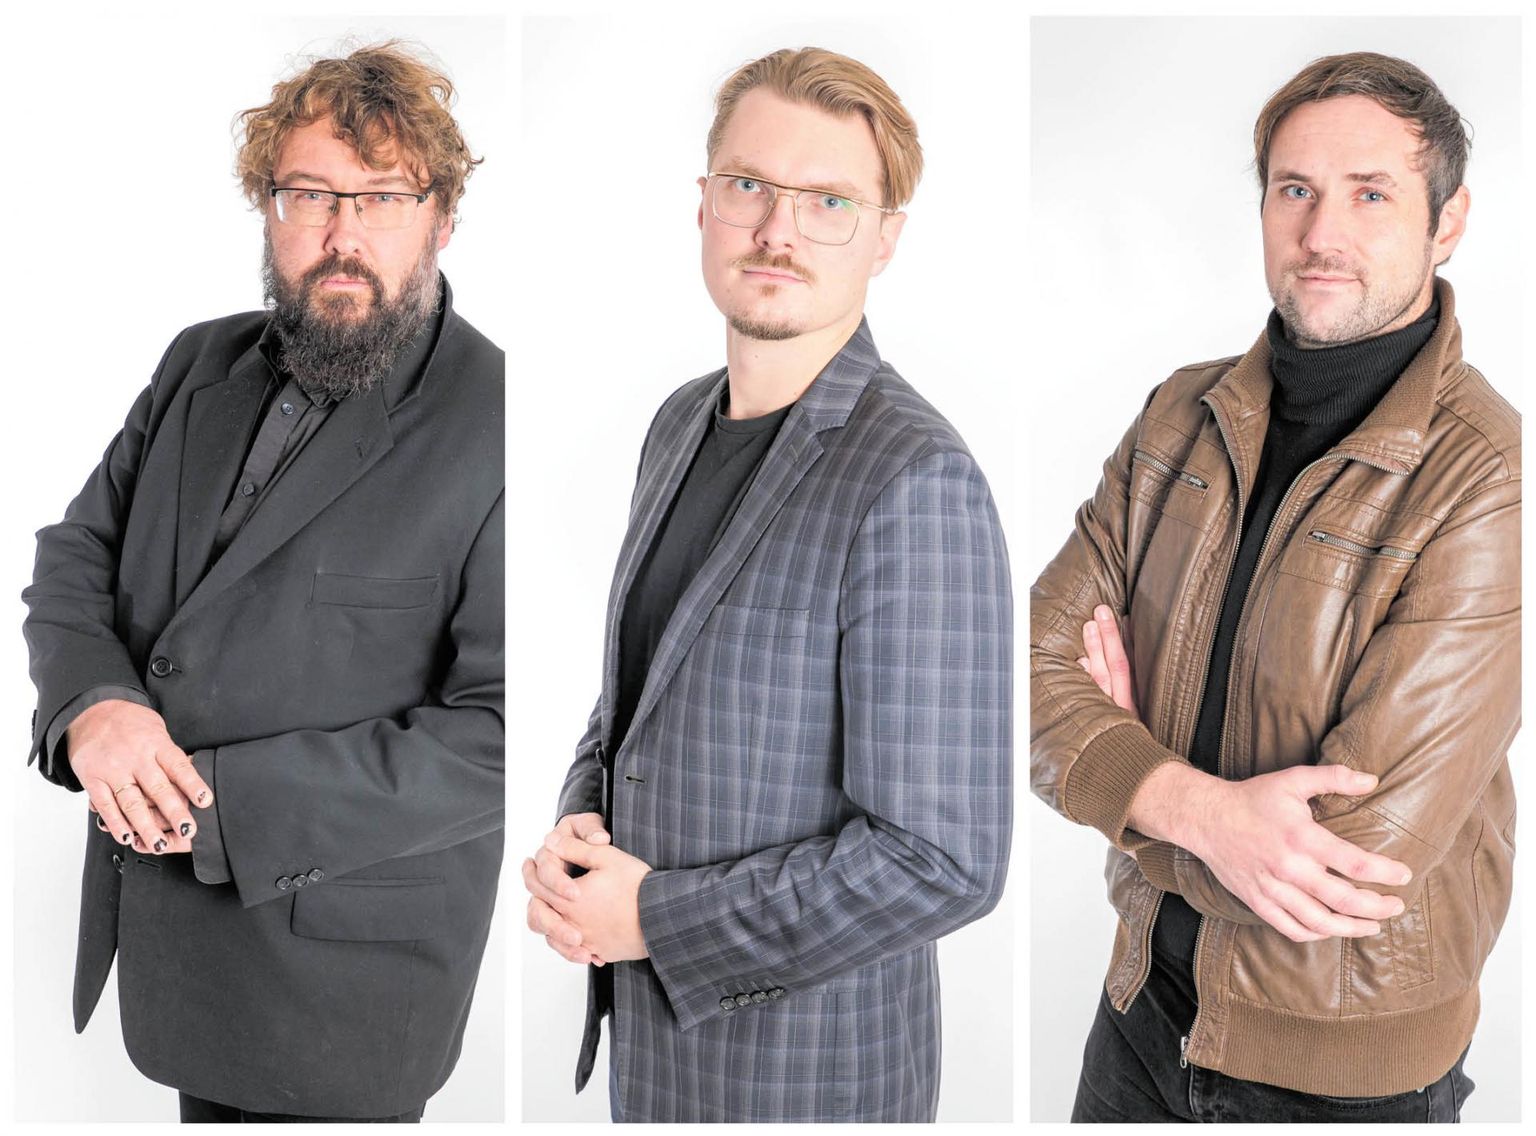 Loovpealinna inistsiaatorid on (vasakult) Al Paldrok, Sten Õitspuu, Kristo Kaljuvee, kes loodavad Pärnule uue ja väärika identiteedi luua. 